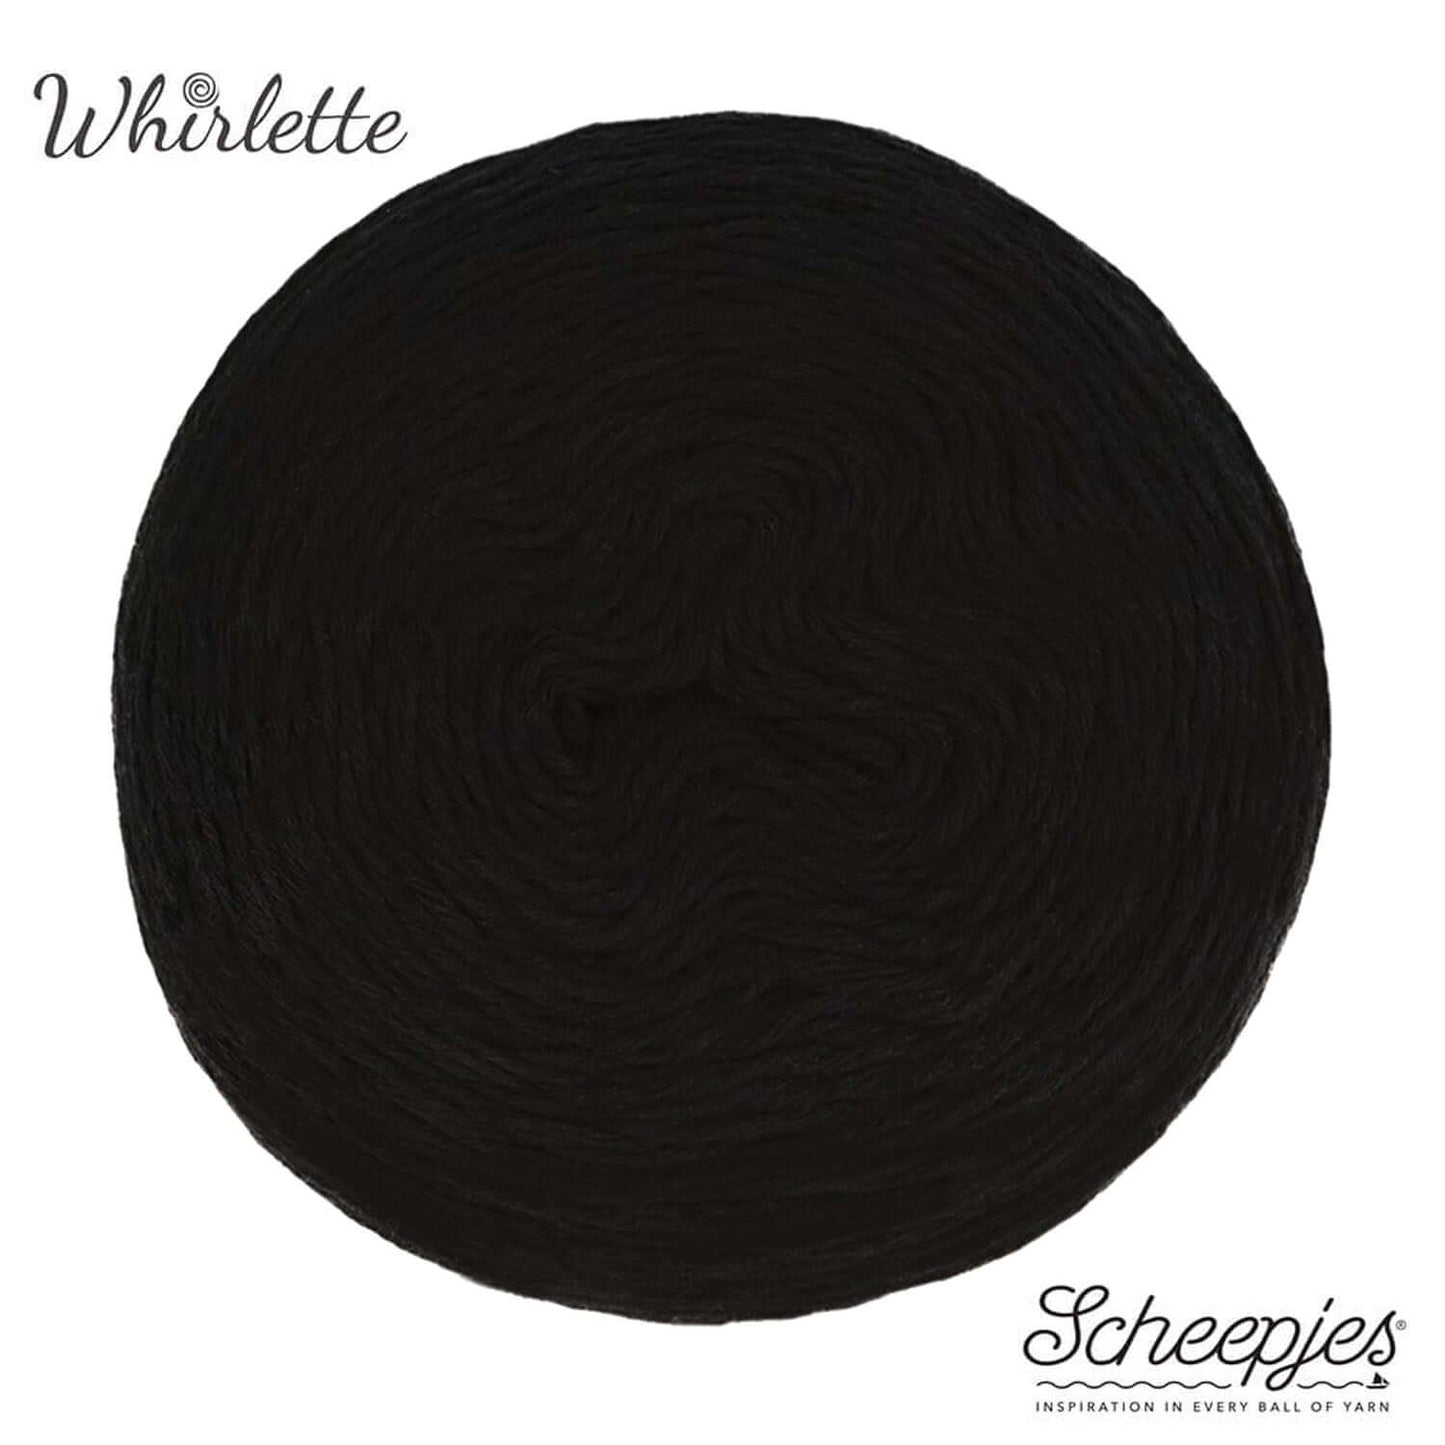 Scheepjes Whirlette - 851 Liquorice